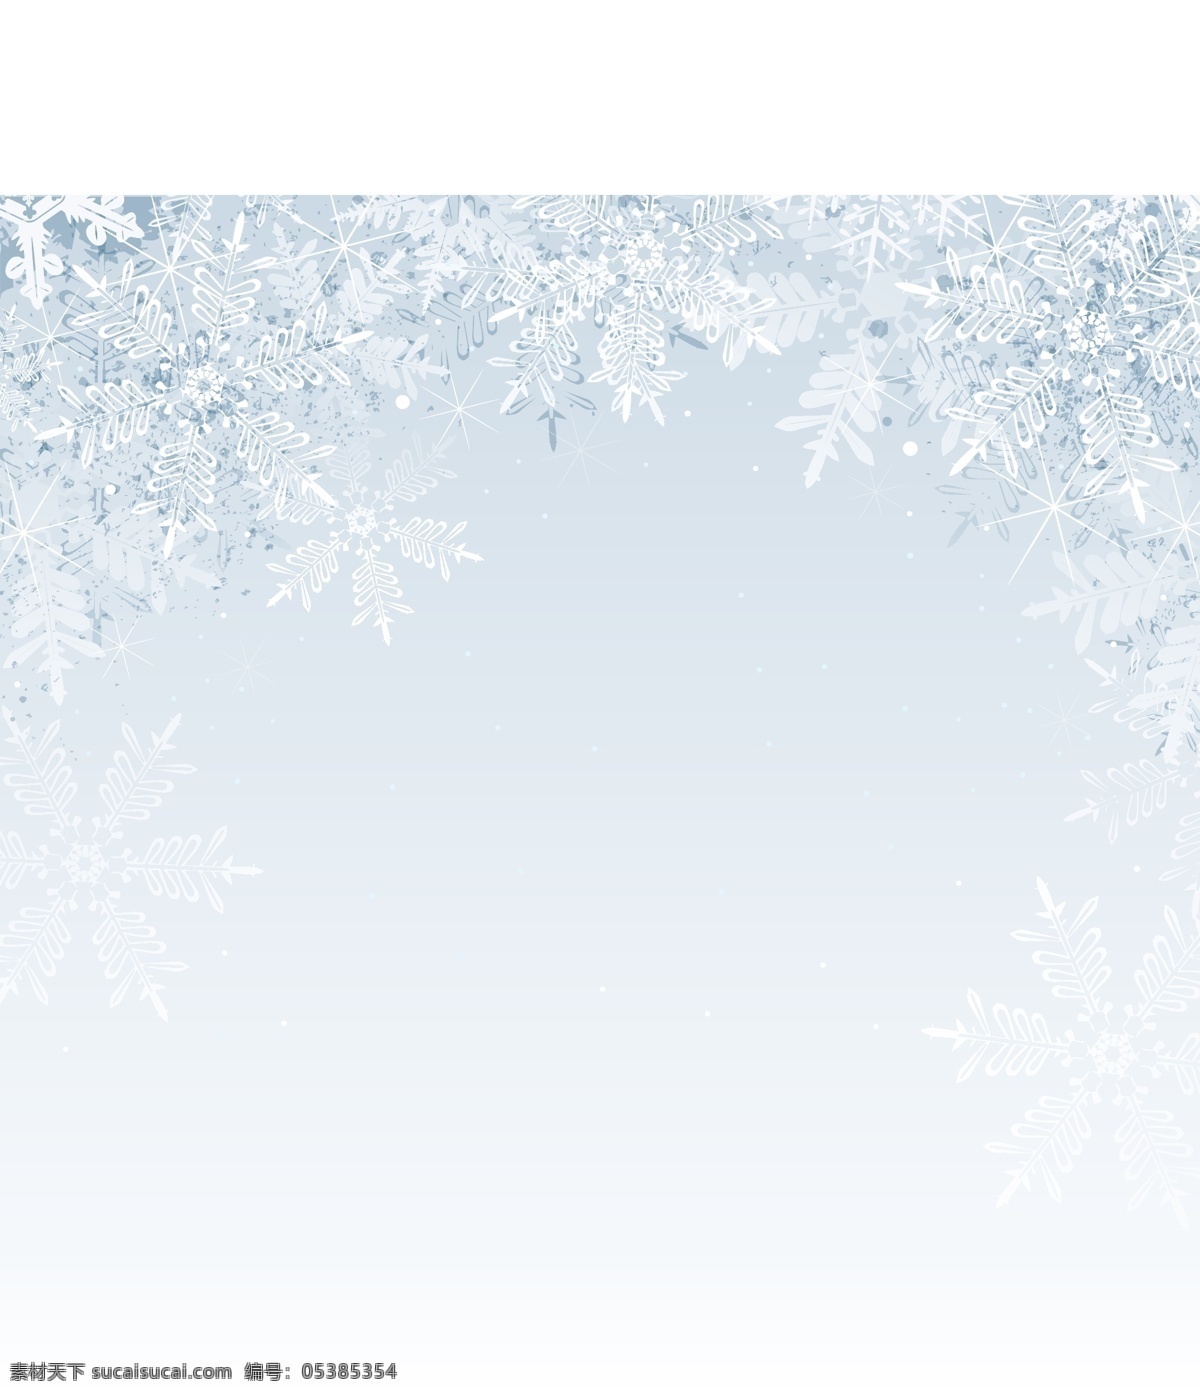 雪花 冬天 背景 雪 圣诞 大雪 底图 底纹 蓝色 渐变 插图